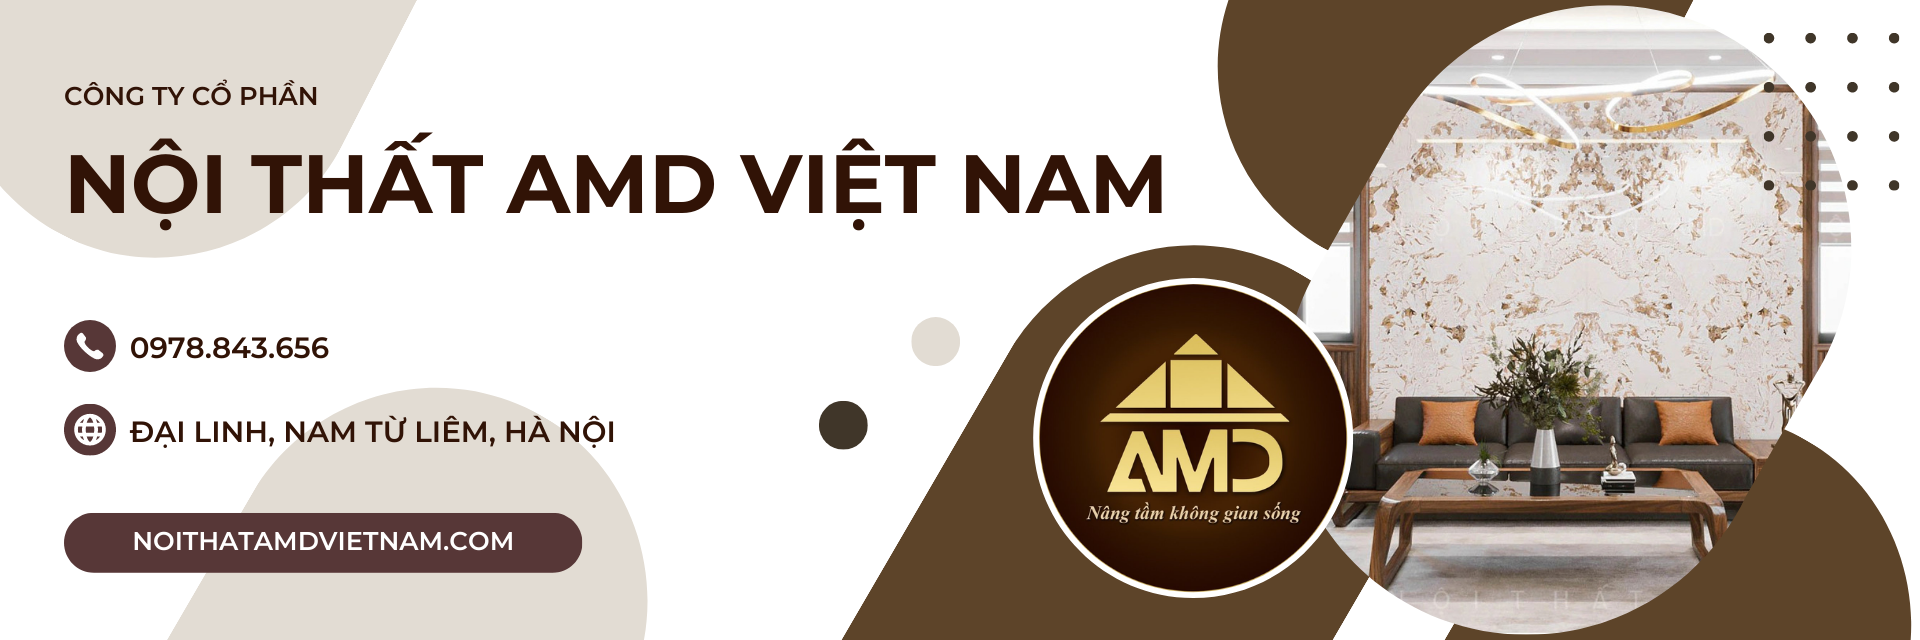 Công ty cổ phần nội thất AMD Việt Nam